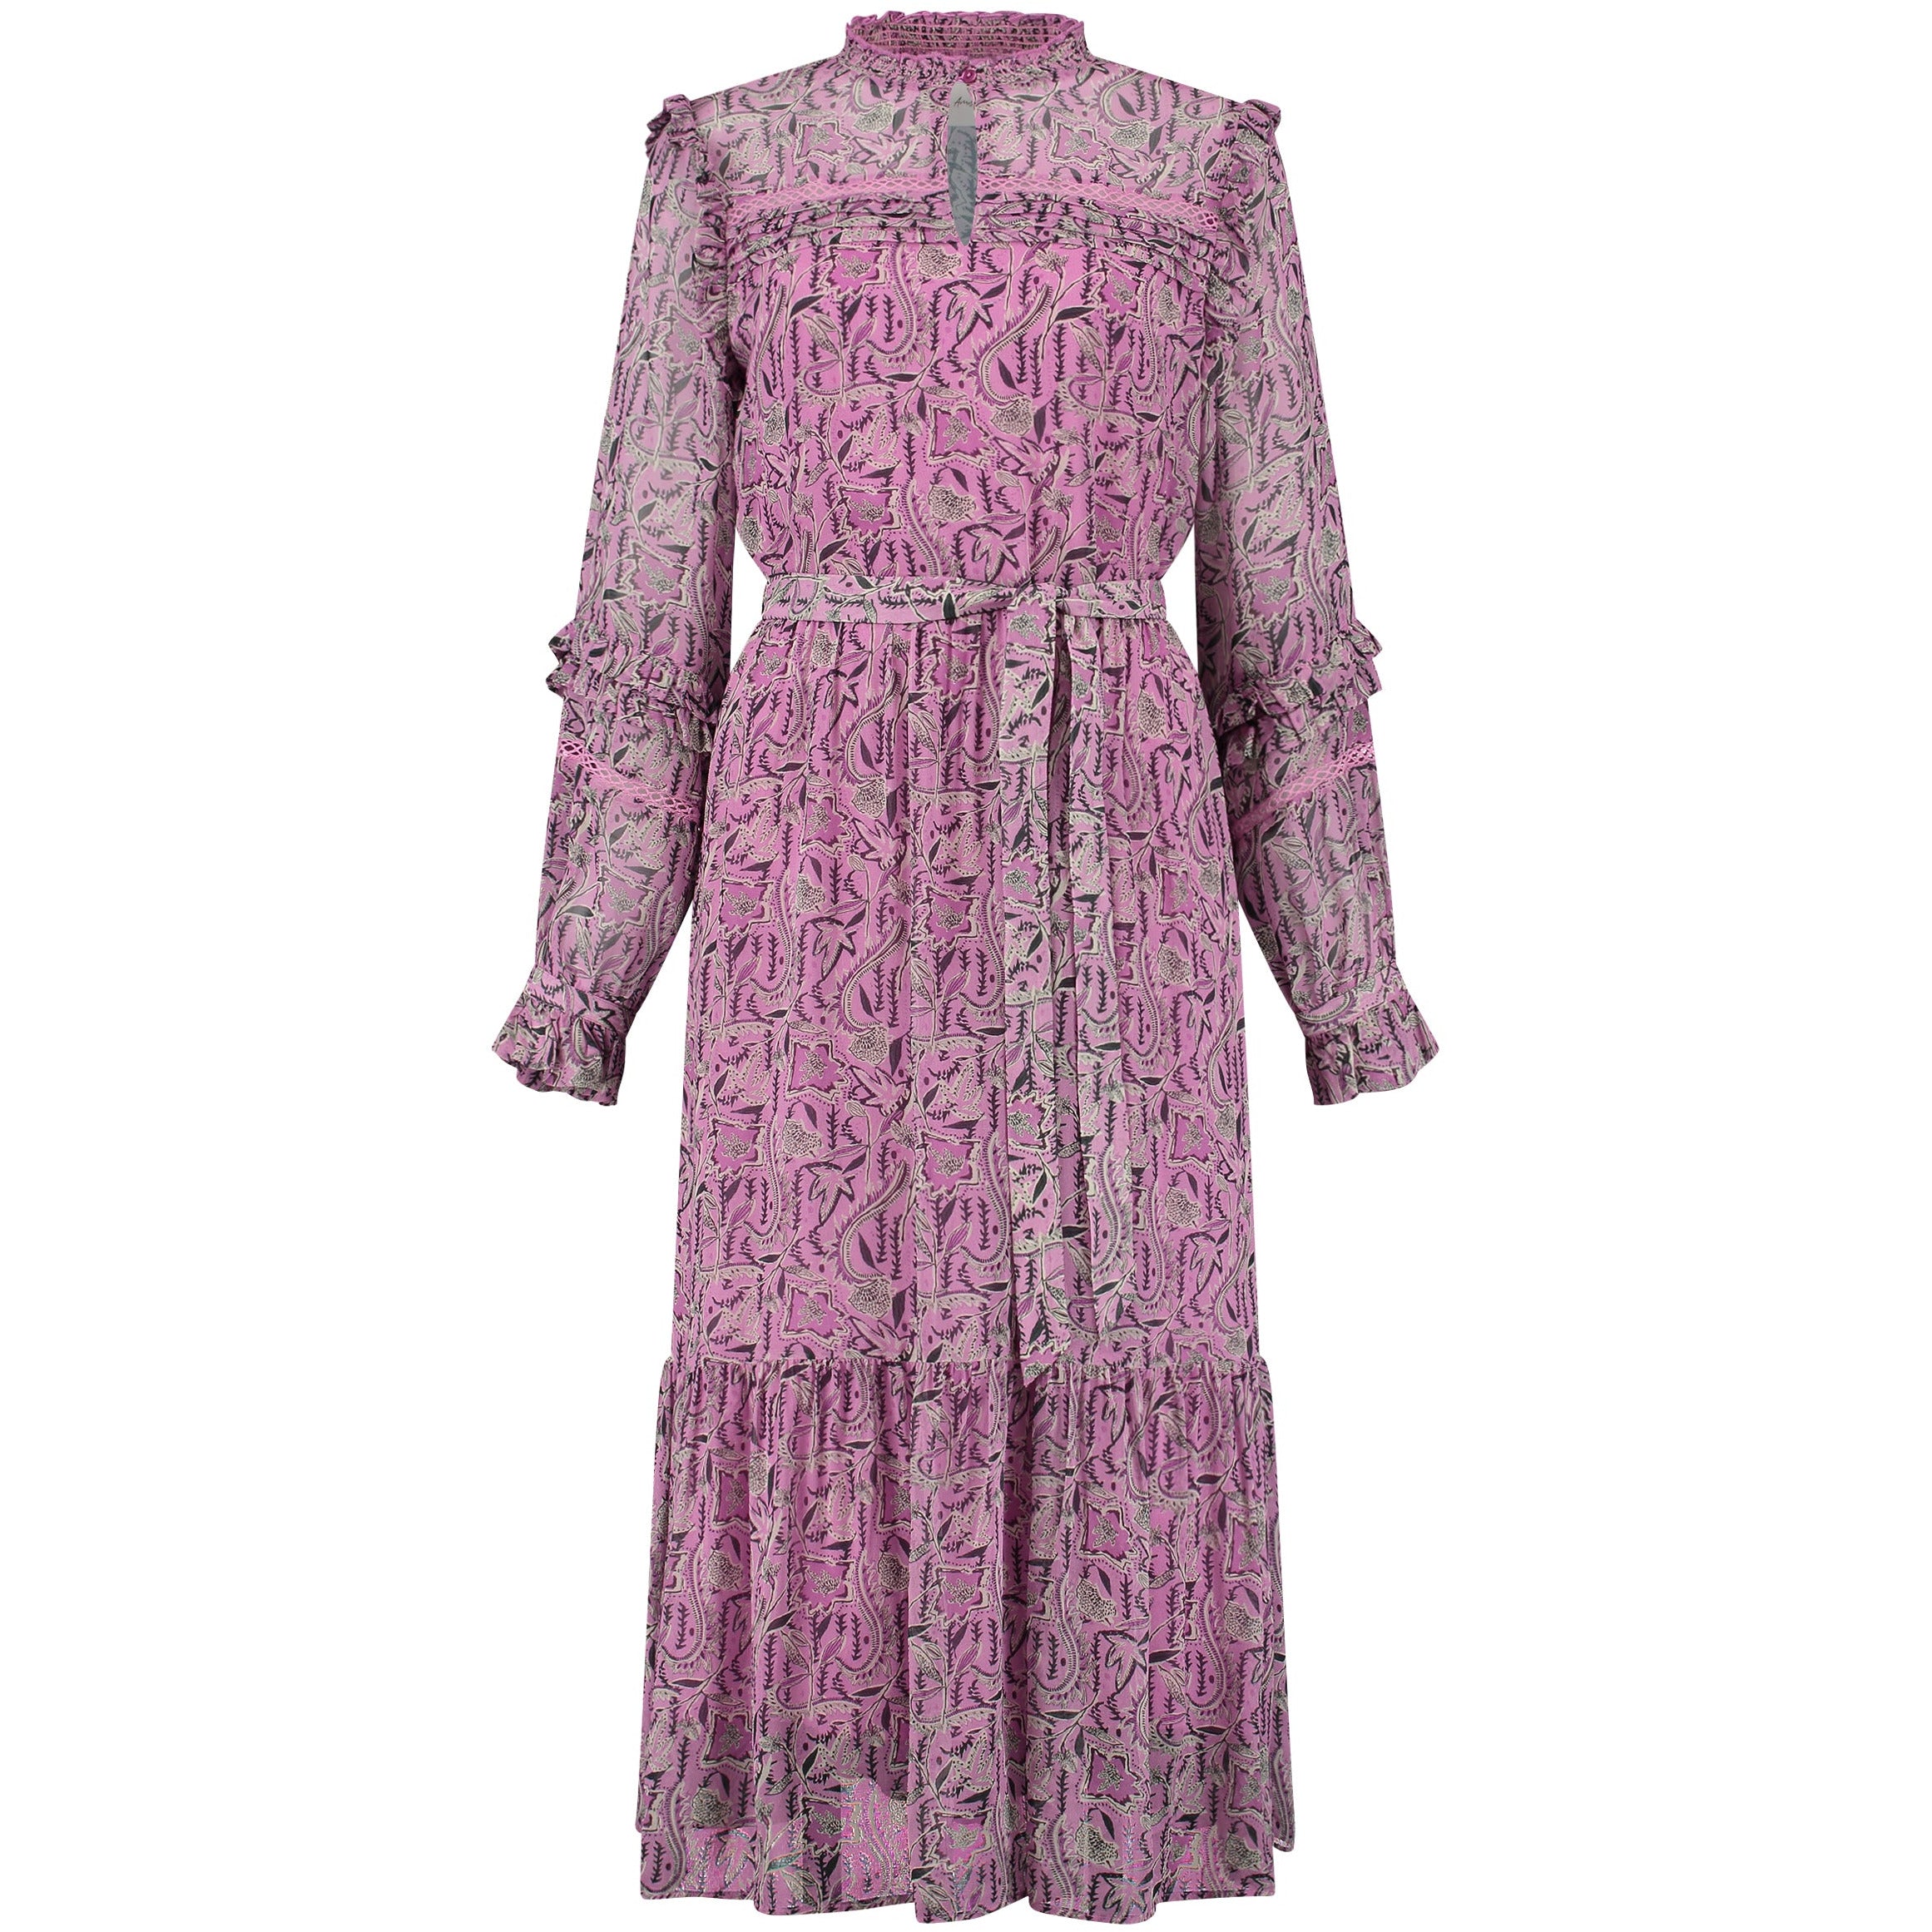 POM Flows Mauve Pink Dress SP6950